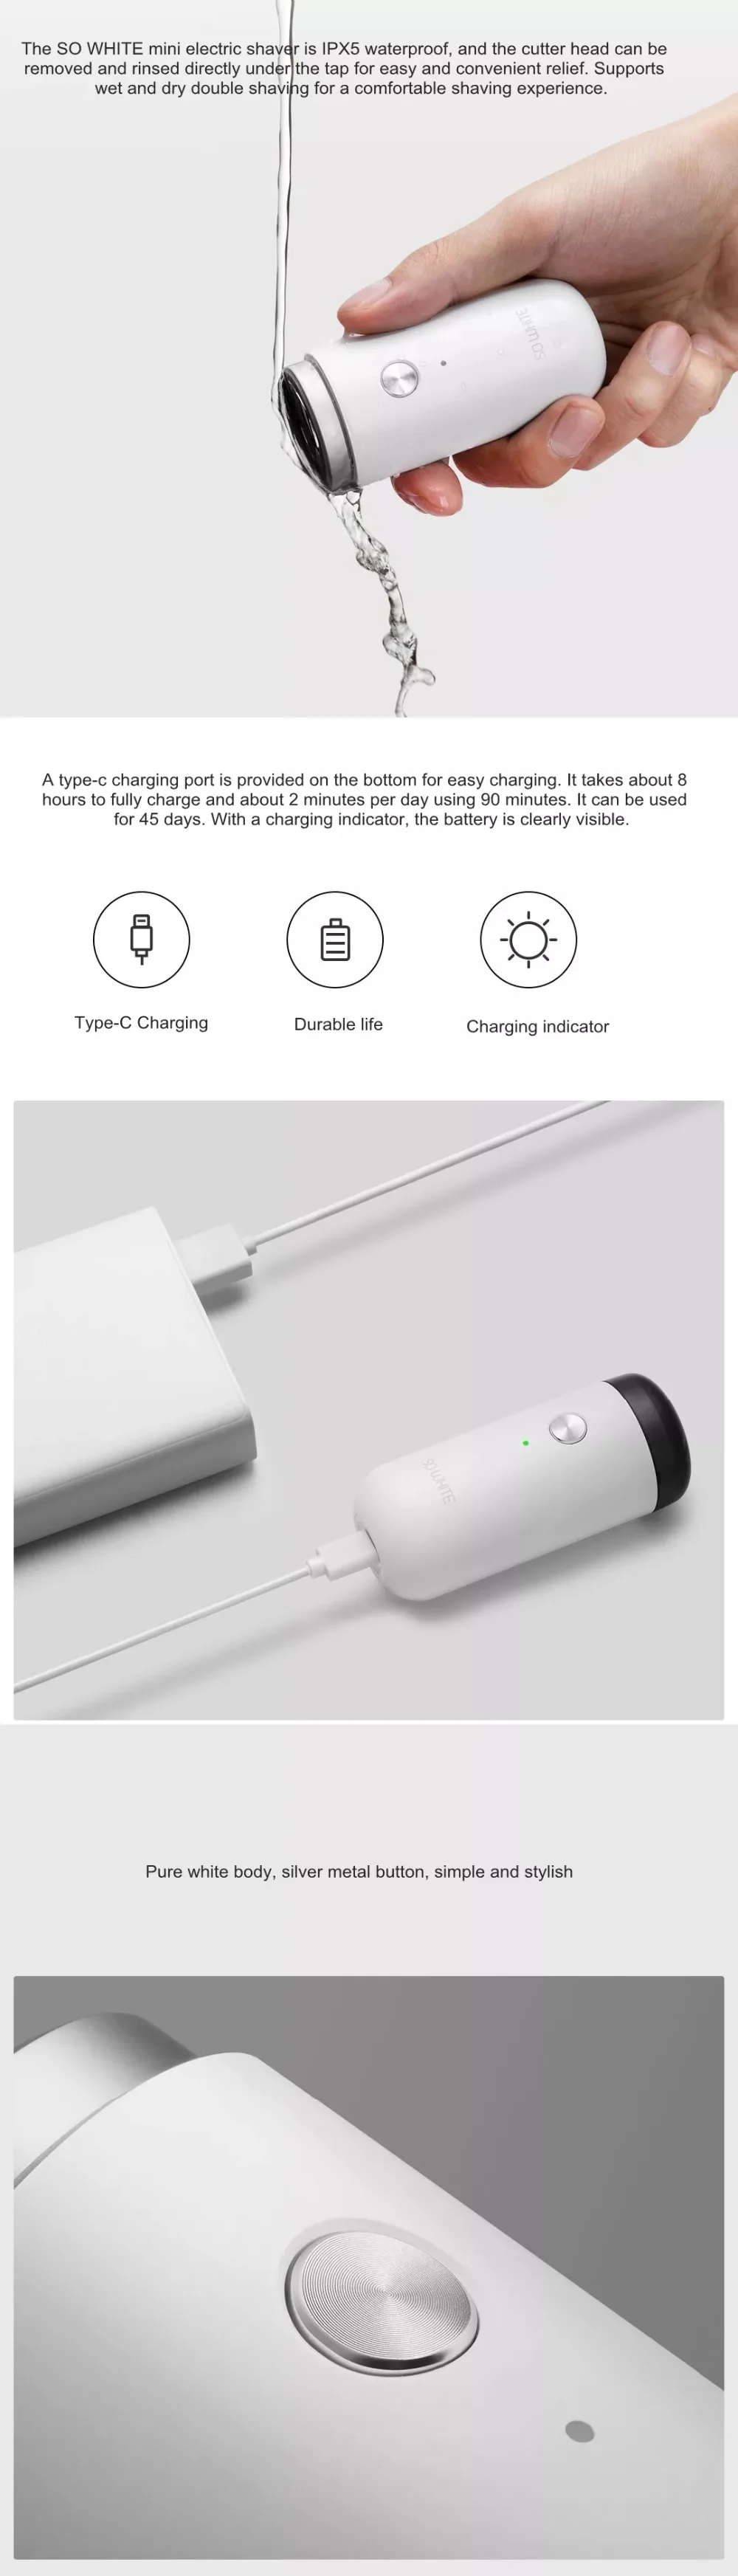 Оригинал Xiaomi Mijia So White мини-электробритва влажное сухое ручное бритье IPX5 Водонепроницаемый Тип-C заряжается глубокая борода бритья